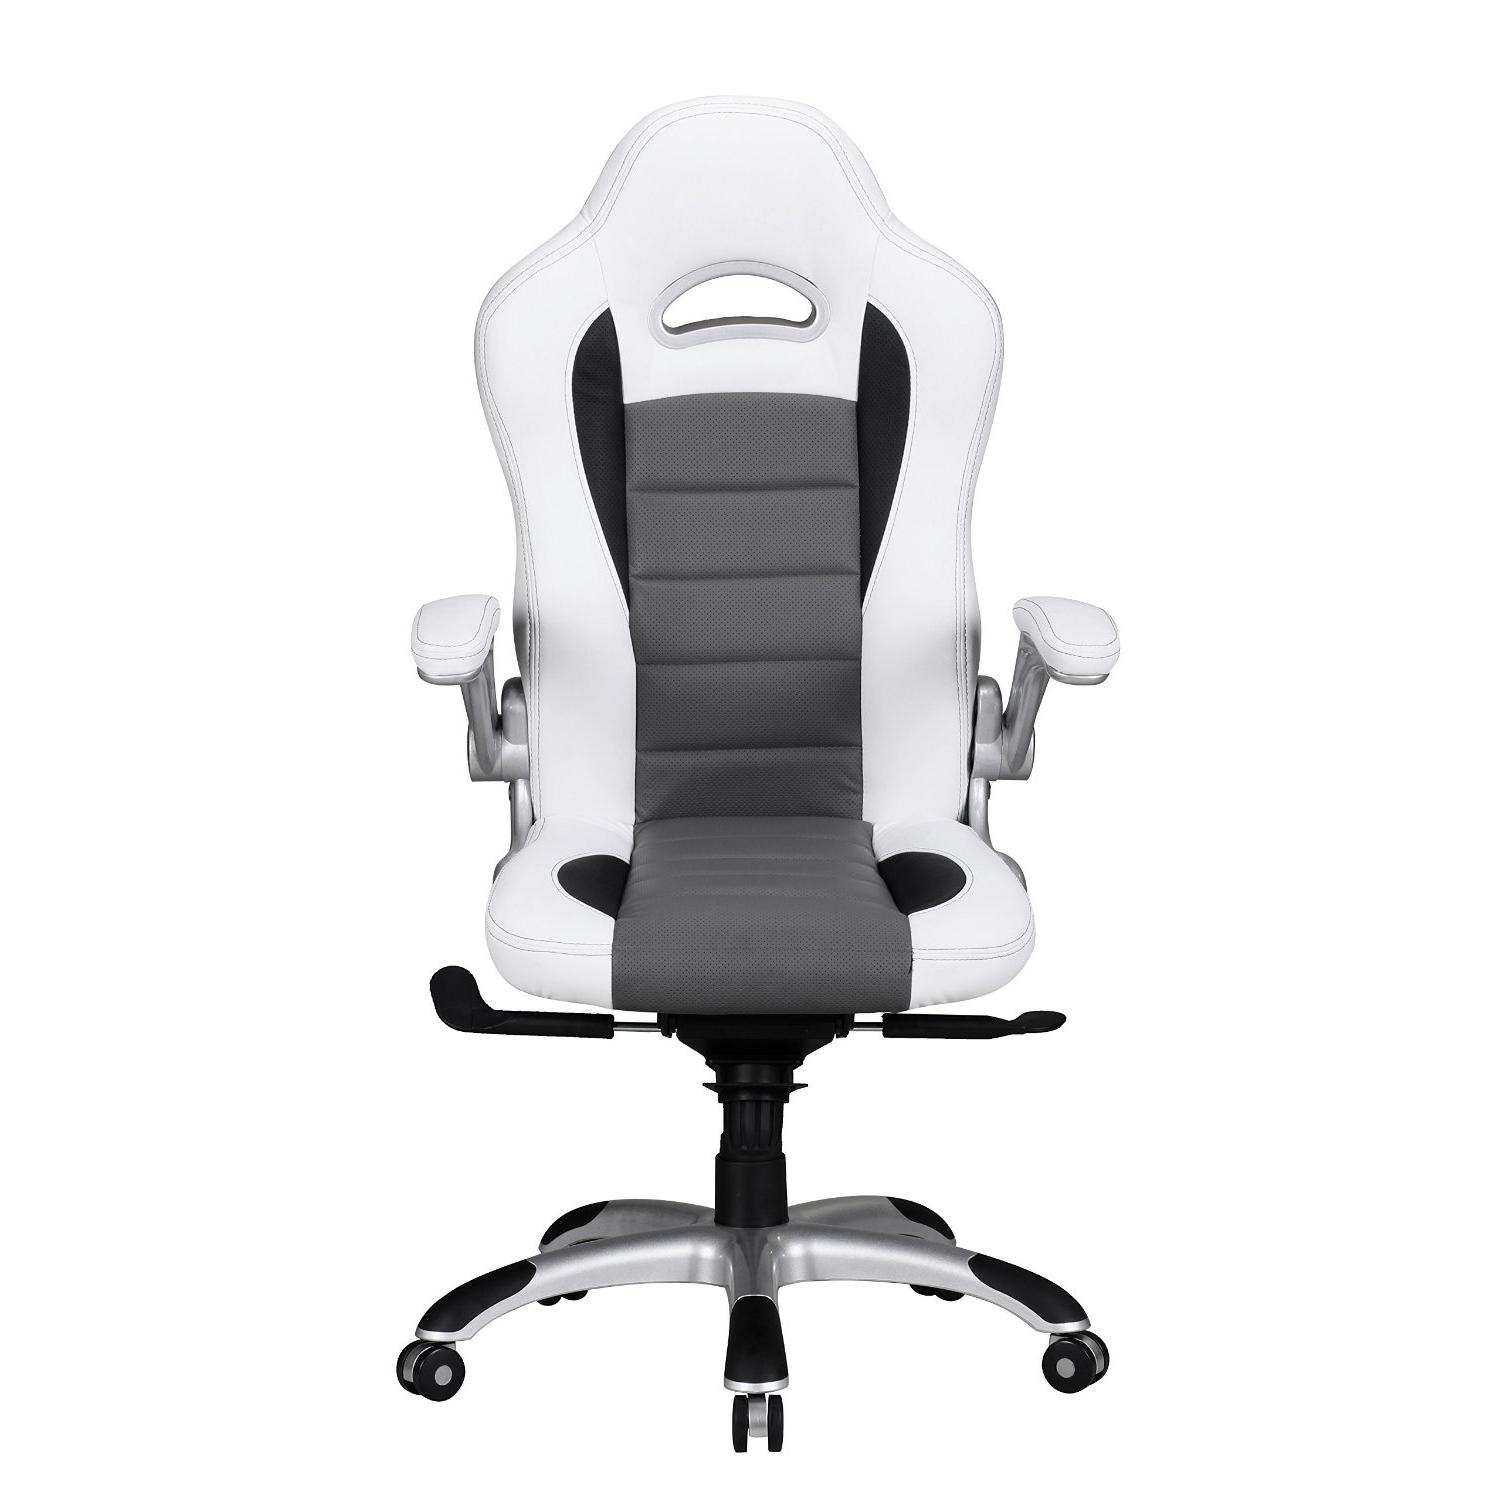 Chaise d'ordinateur NORIS avec un Design Gamer sublime, Revêtement en Cuir,  Utilisation Professionnelle 8h, Blanc 